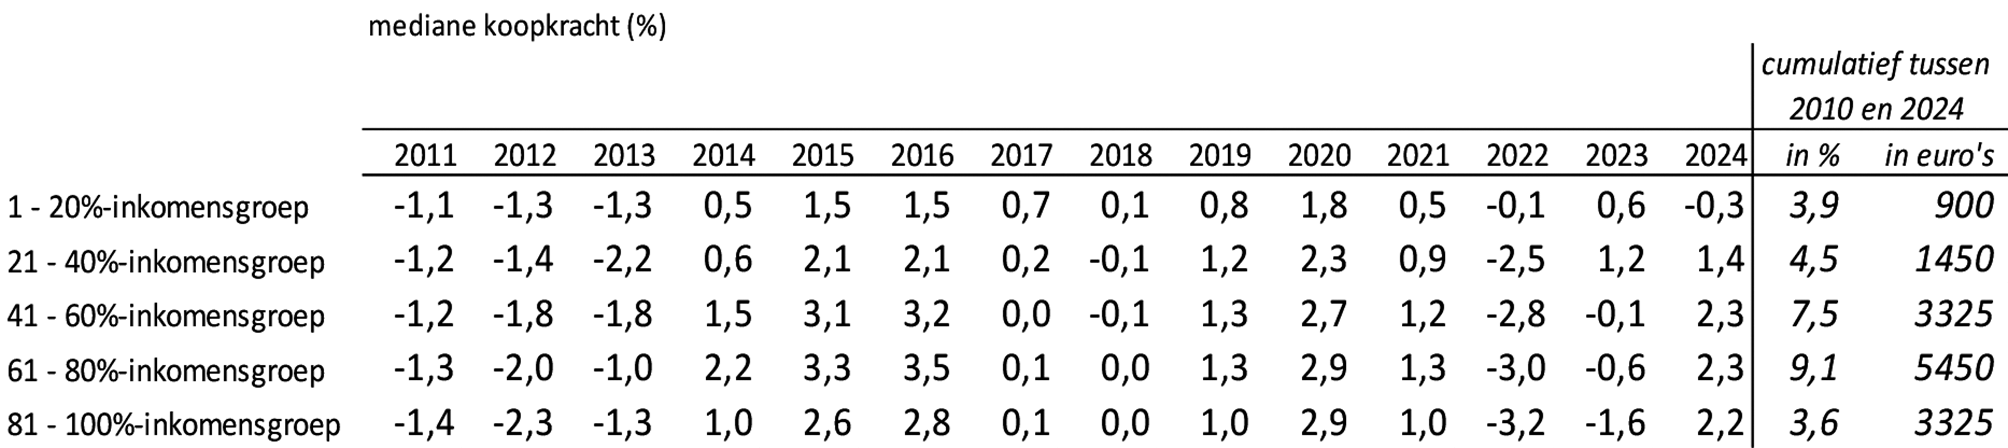 Tabel 1 Mediane statische koopkracht per jaar en benadering van de cumulatieve statische ontwikkeling vanaf 2010 obv CEP 2023, CPB